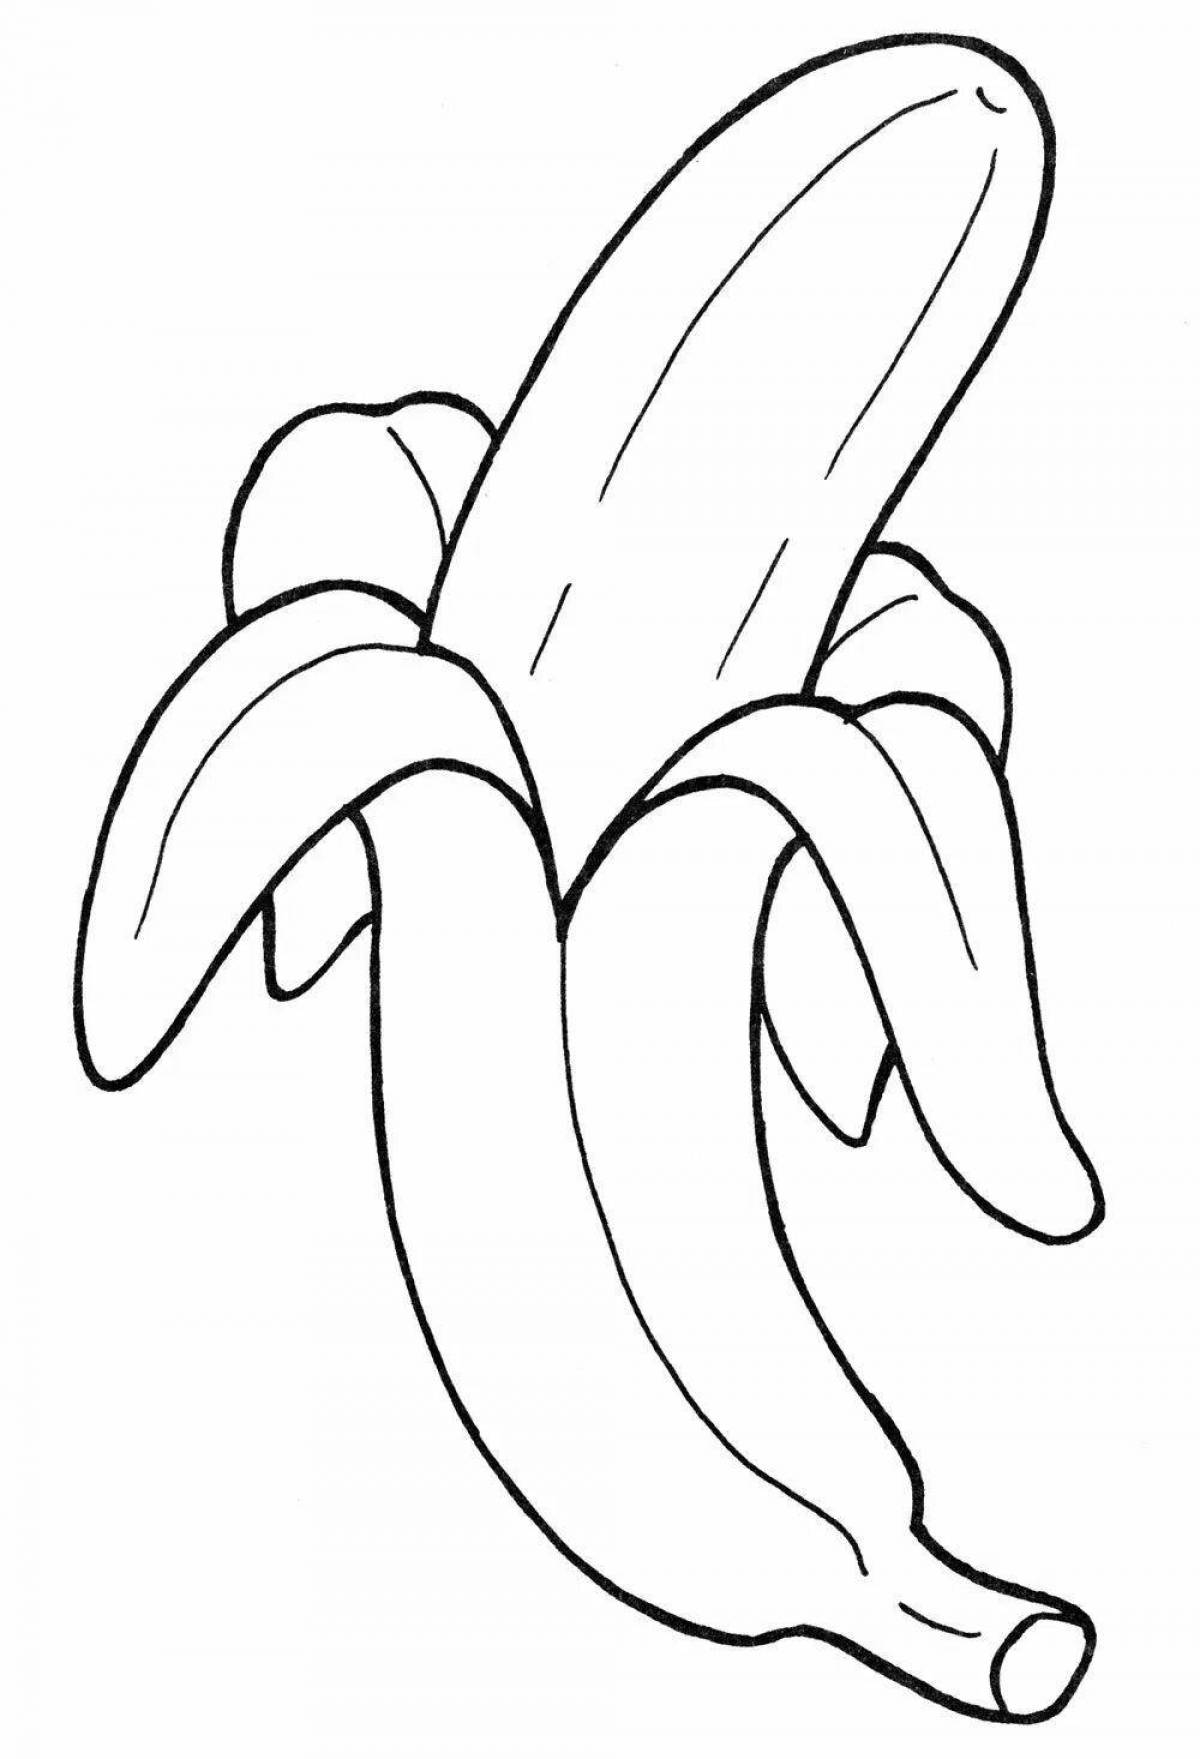 Увлекательная раскраска бананов для детей 3-4 лет